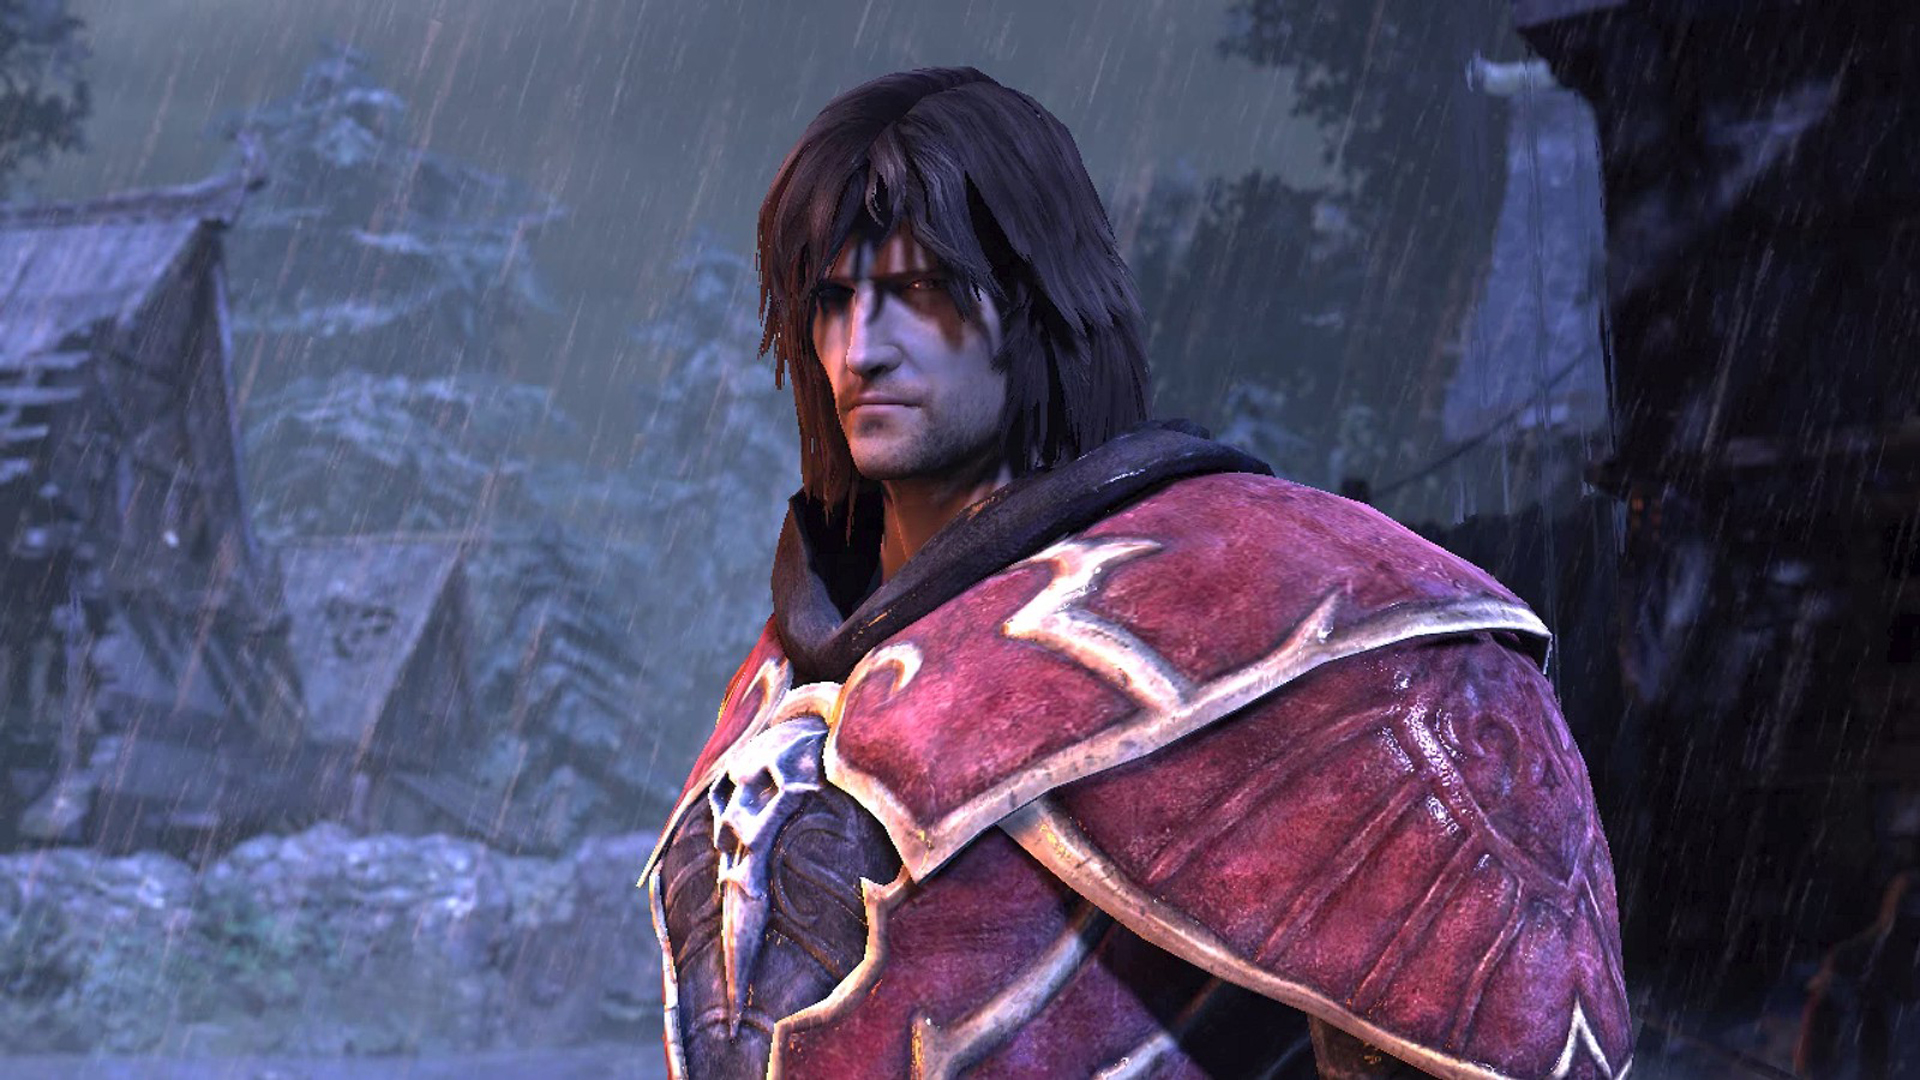 Một người đàn ông có mái tóc dài và áo giáp đỏ ngông cuồng đứng trong mưa trong một trong những trò chơi ma cà rồng hay nhất, Lords of Shadow Castlevania